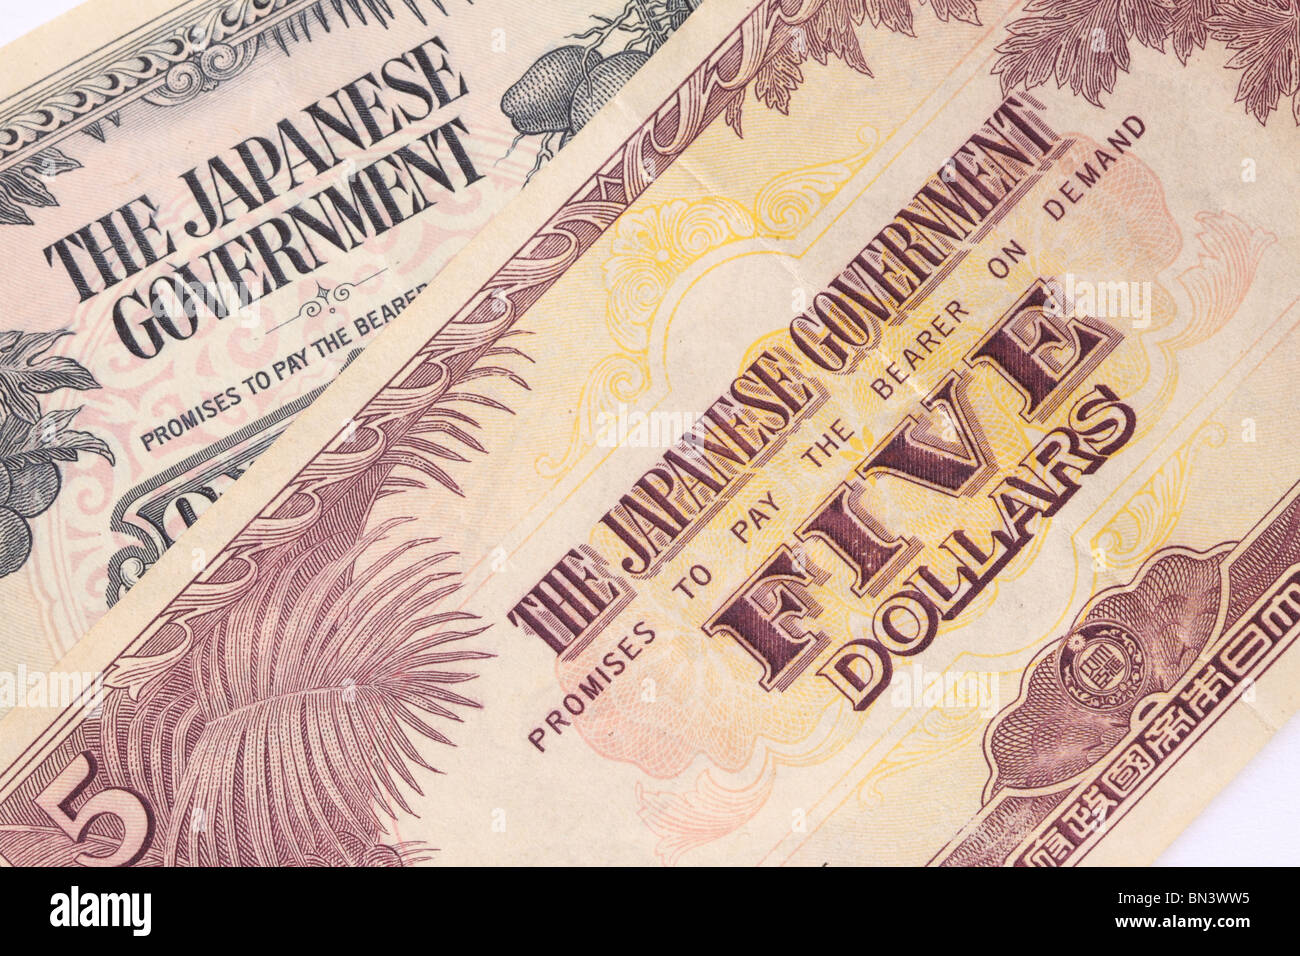 Le Gouvernement japonais a publié cinq 5 dollar bank note monnaie émise pendant la Deuxième Guerre mondiale dans la partie occupée de l'Asie du Sud Est Banque D'Images